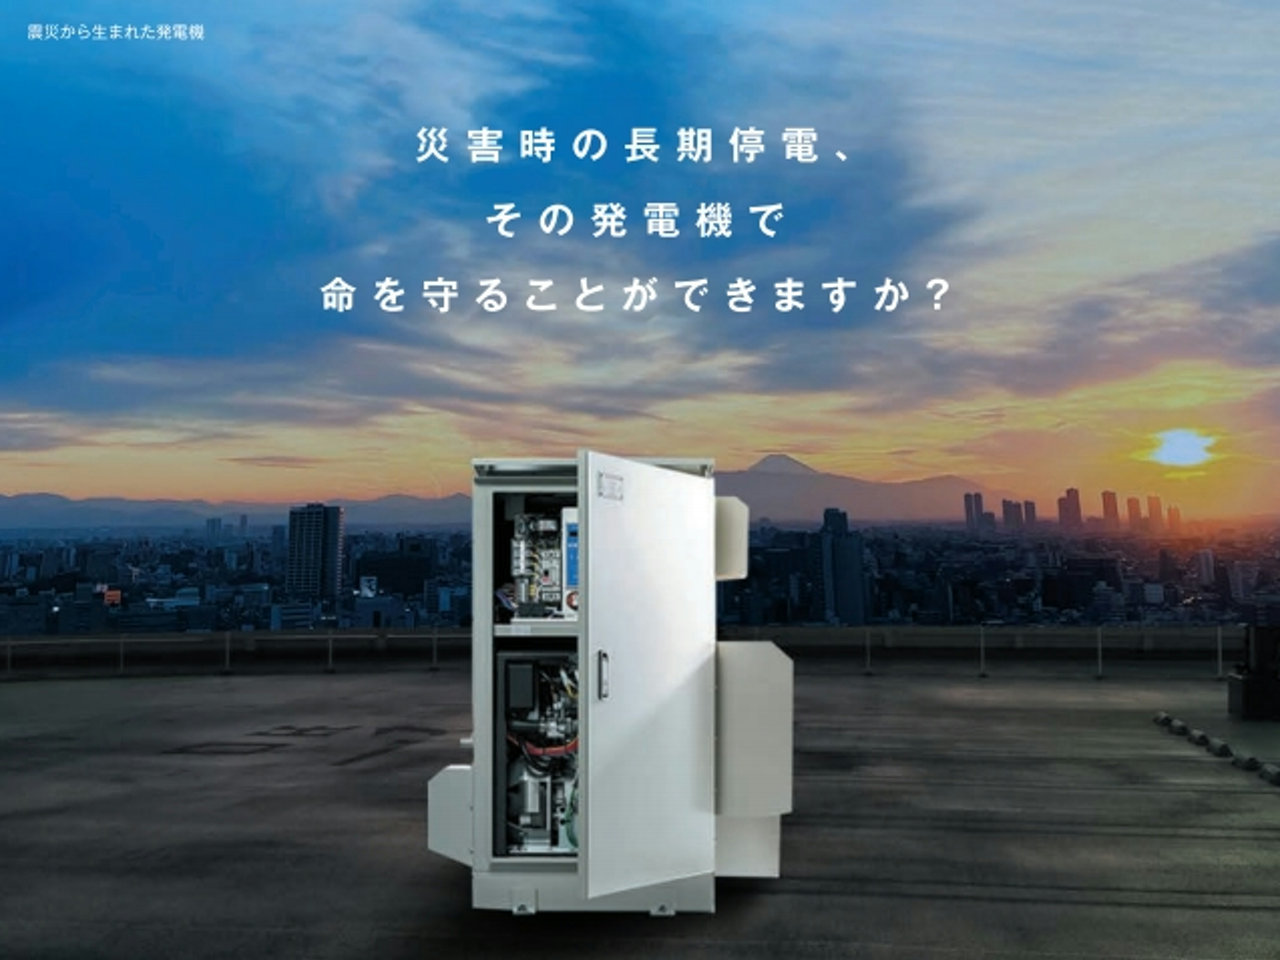 日本リハビリテーション病院・施設協会誌2022年夏号に弊社取扱いのLPガス非常用発電機の広告が掲載されました。